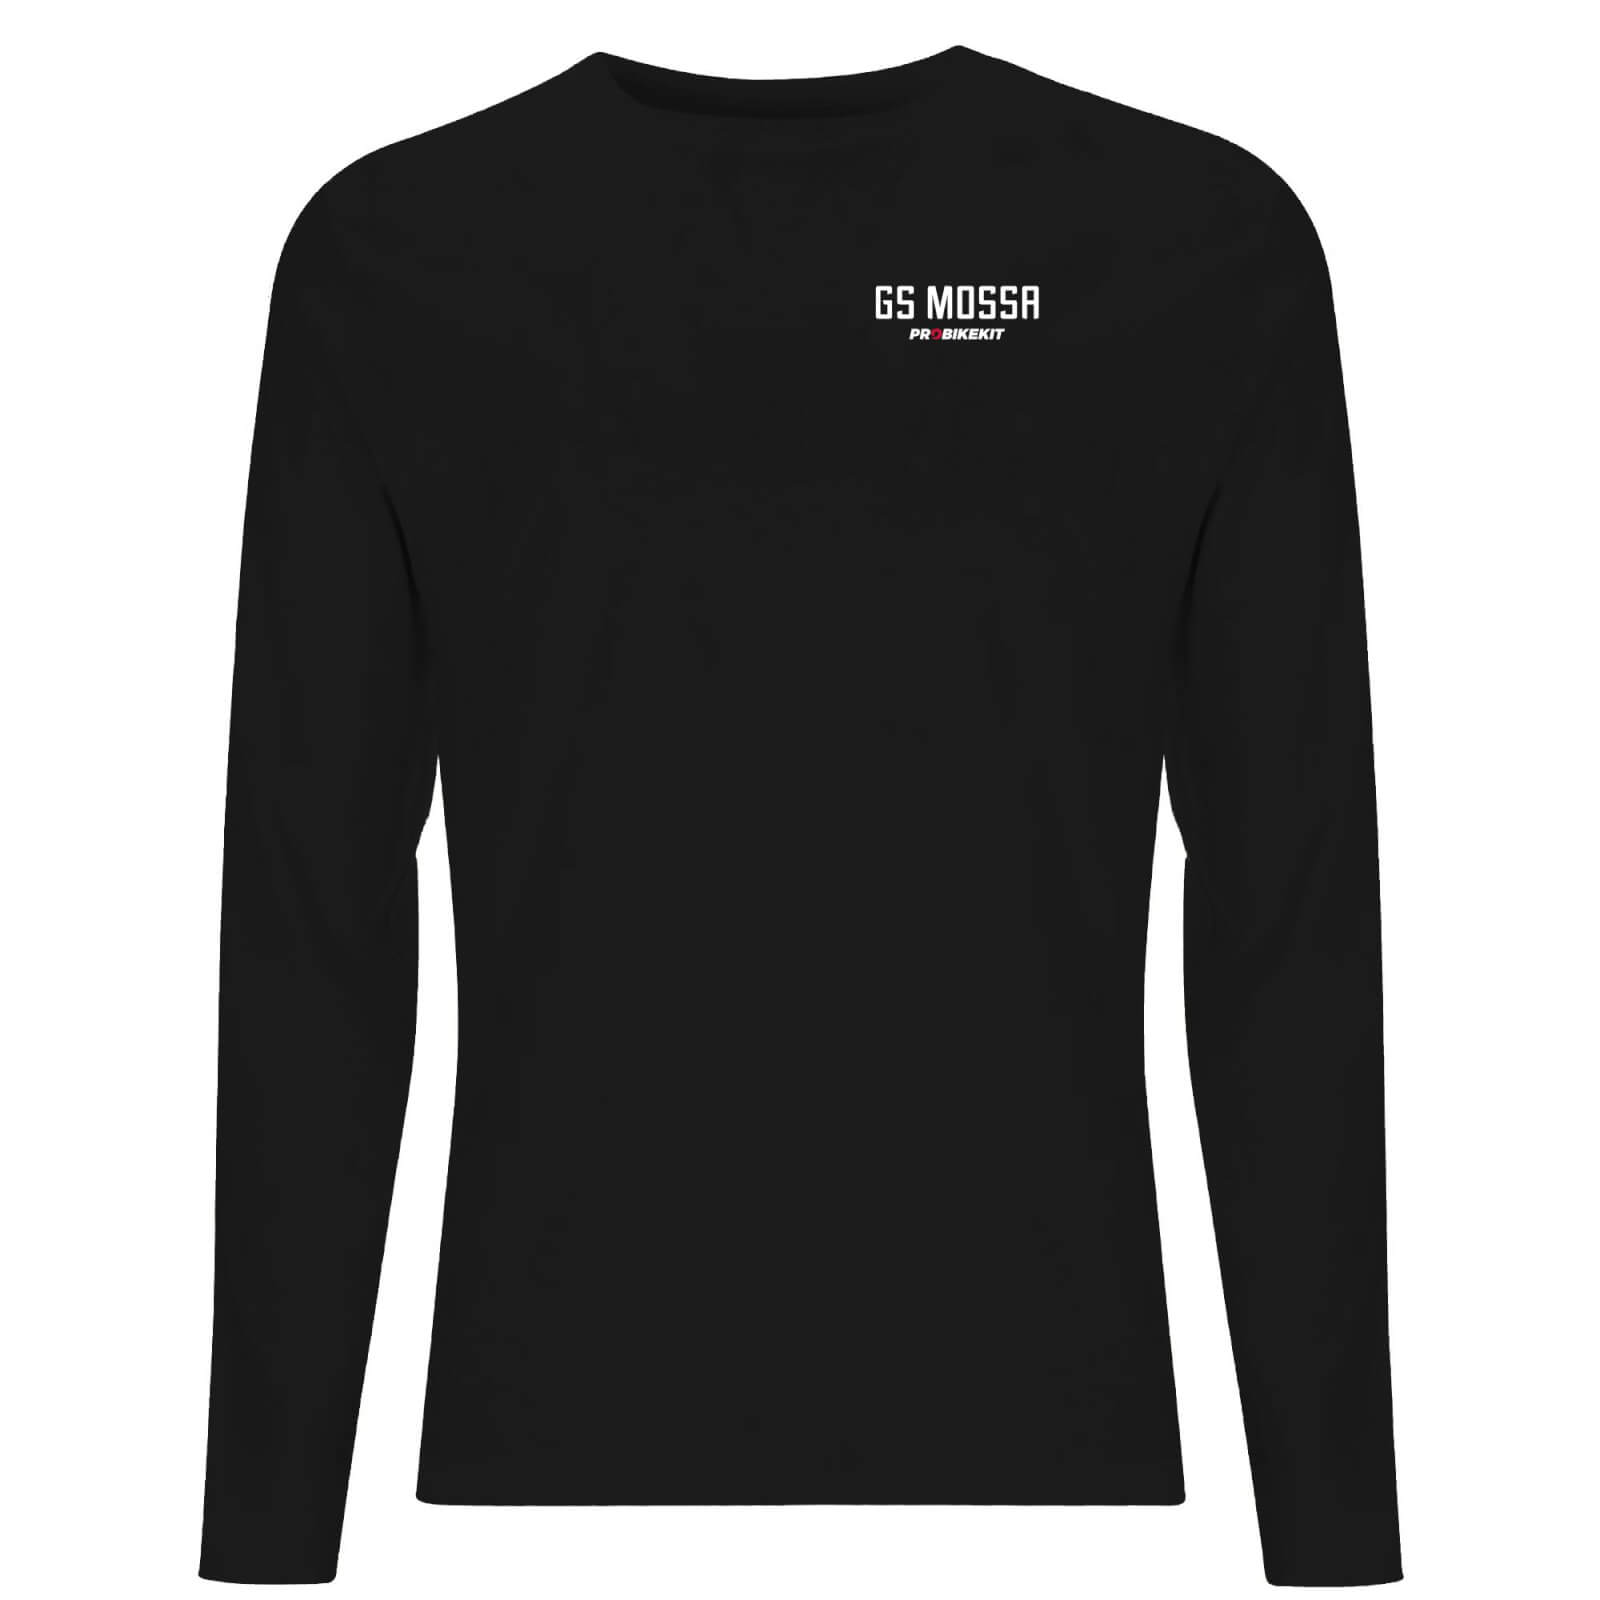 PBK GS Mossa Meet Ride Feel Good Techno Men's Long Sleeve T-Shirt - Black - XL - Black